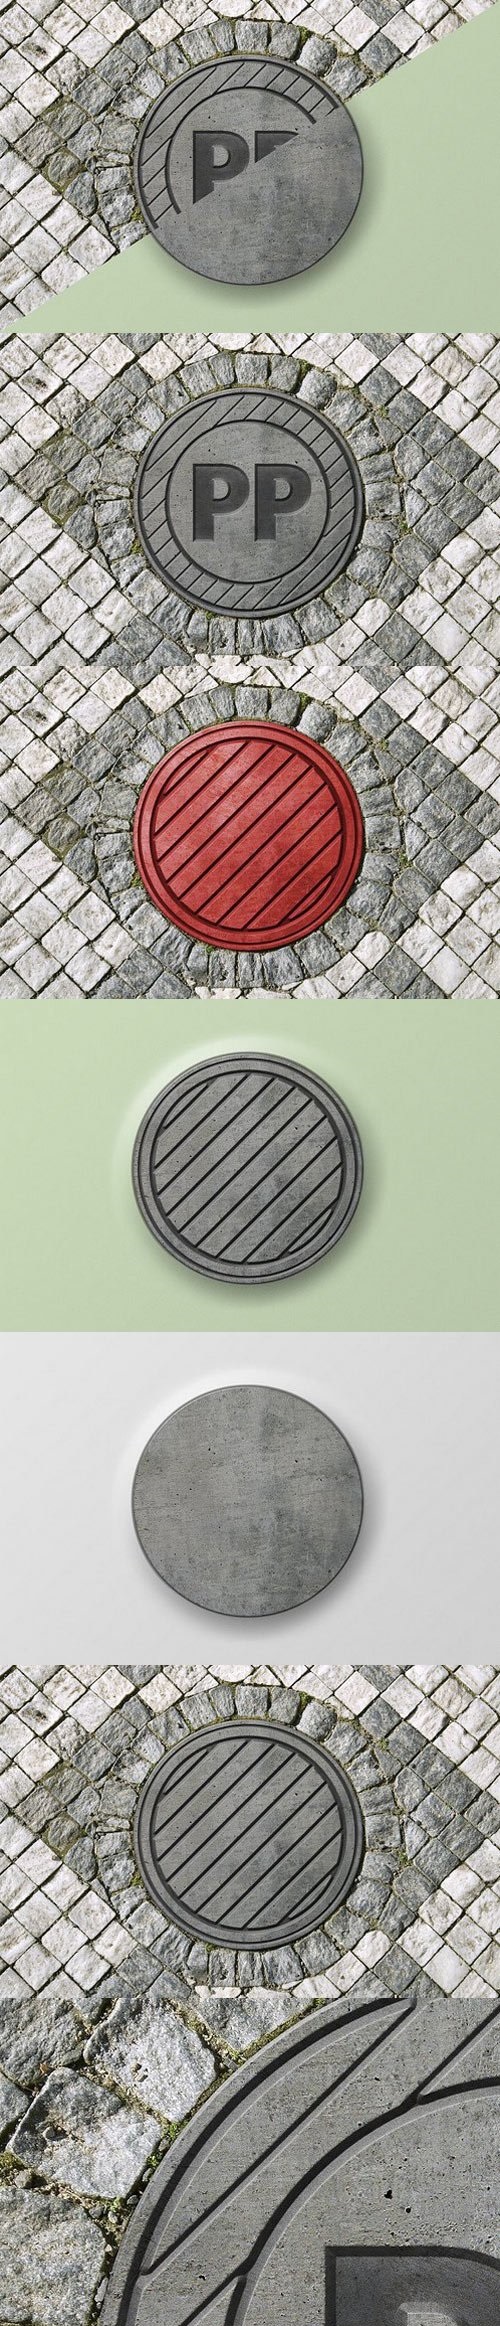 3D sewer hatch & logo mock-up 1697573